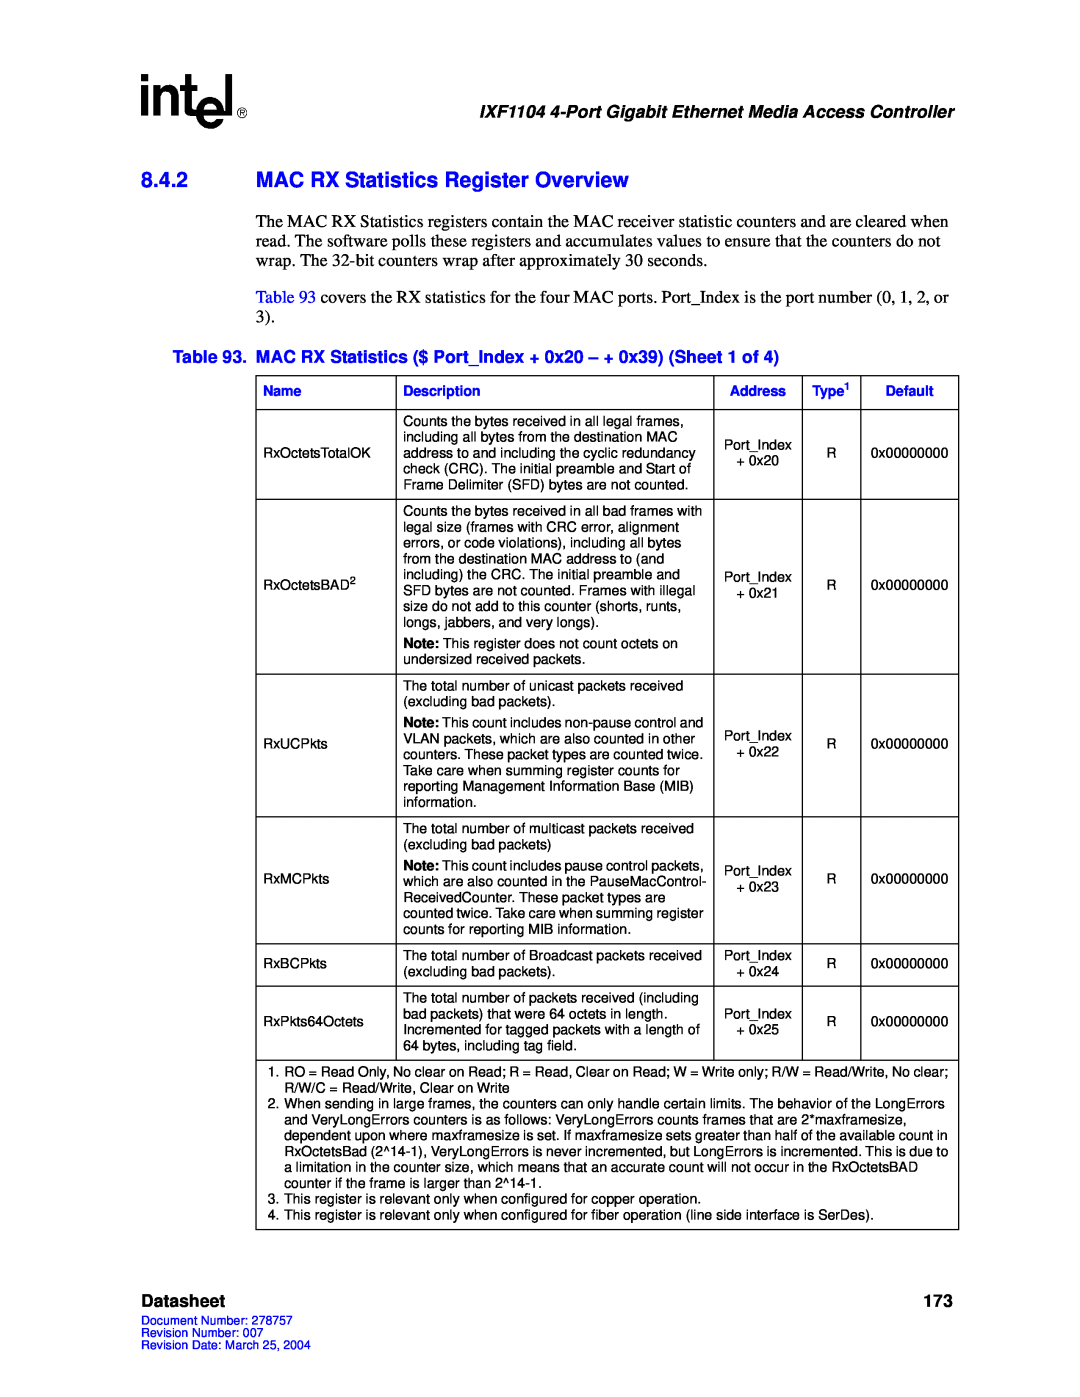 Intel IXF1104 manual 8.4.2MAC RX Statistics Register Overview, Datasheet 